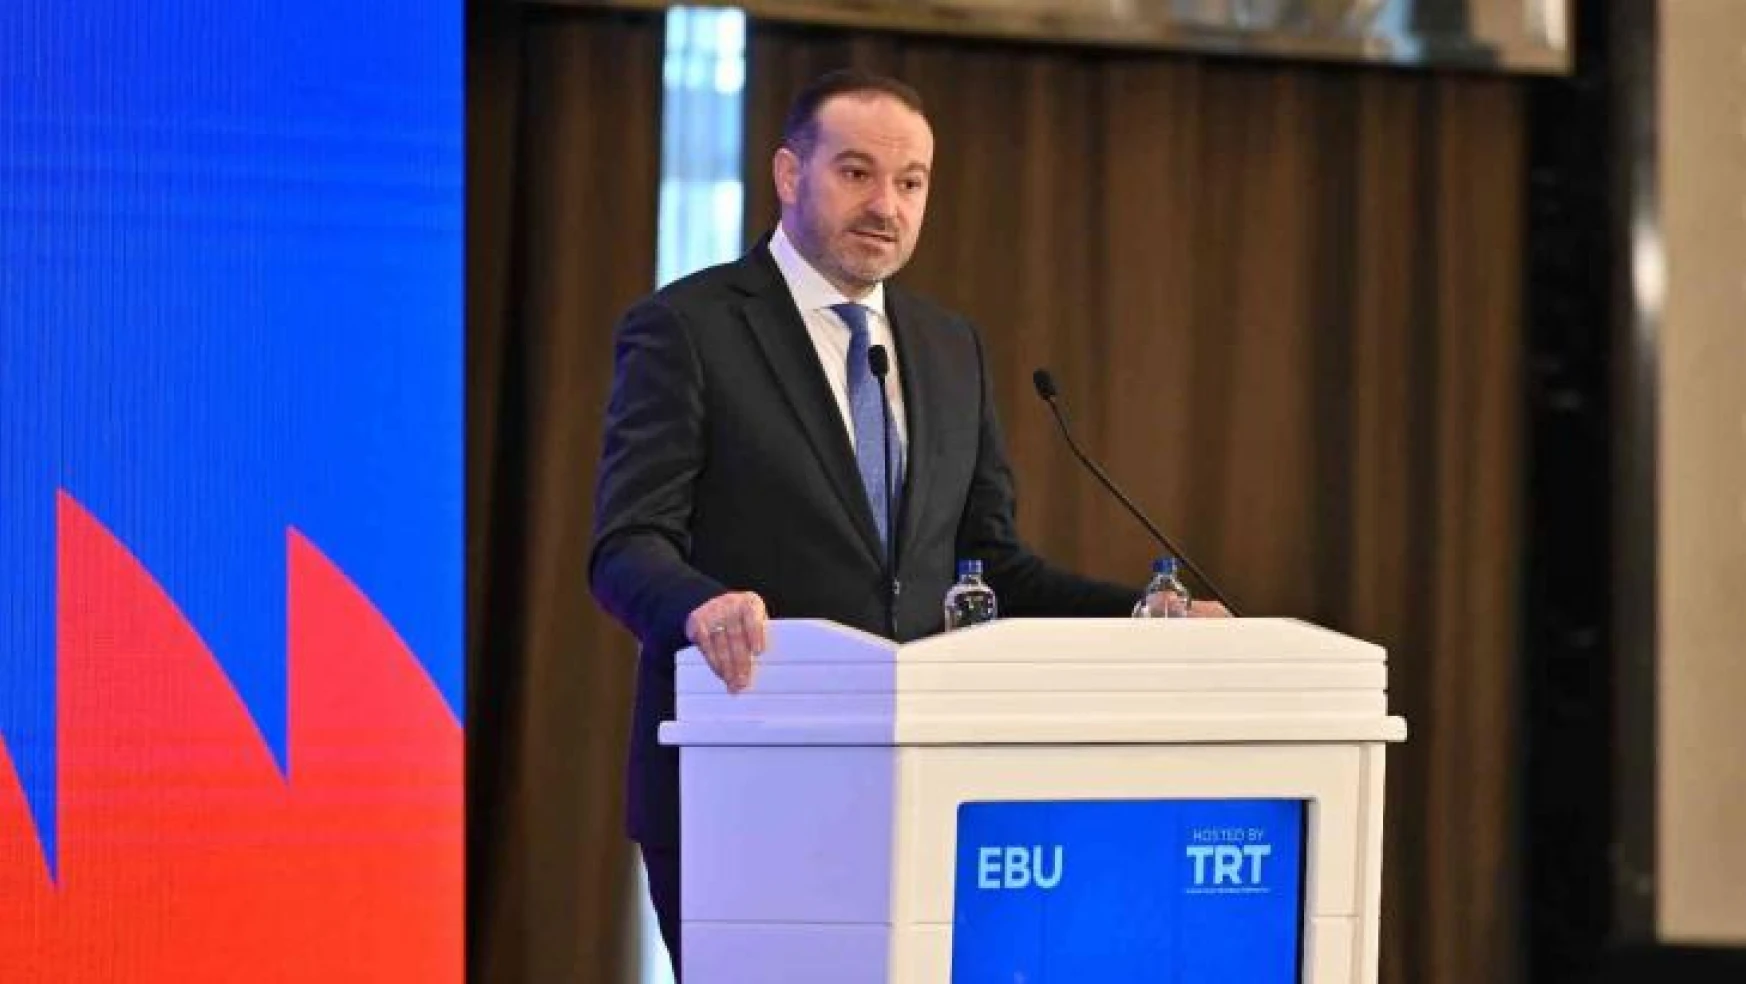 TRT Genel Müdürü Sobacı'dan Avrupalı Yayıncılara 'terörizme karşı durma' çağrısı